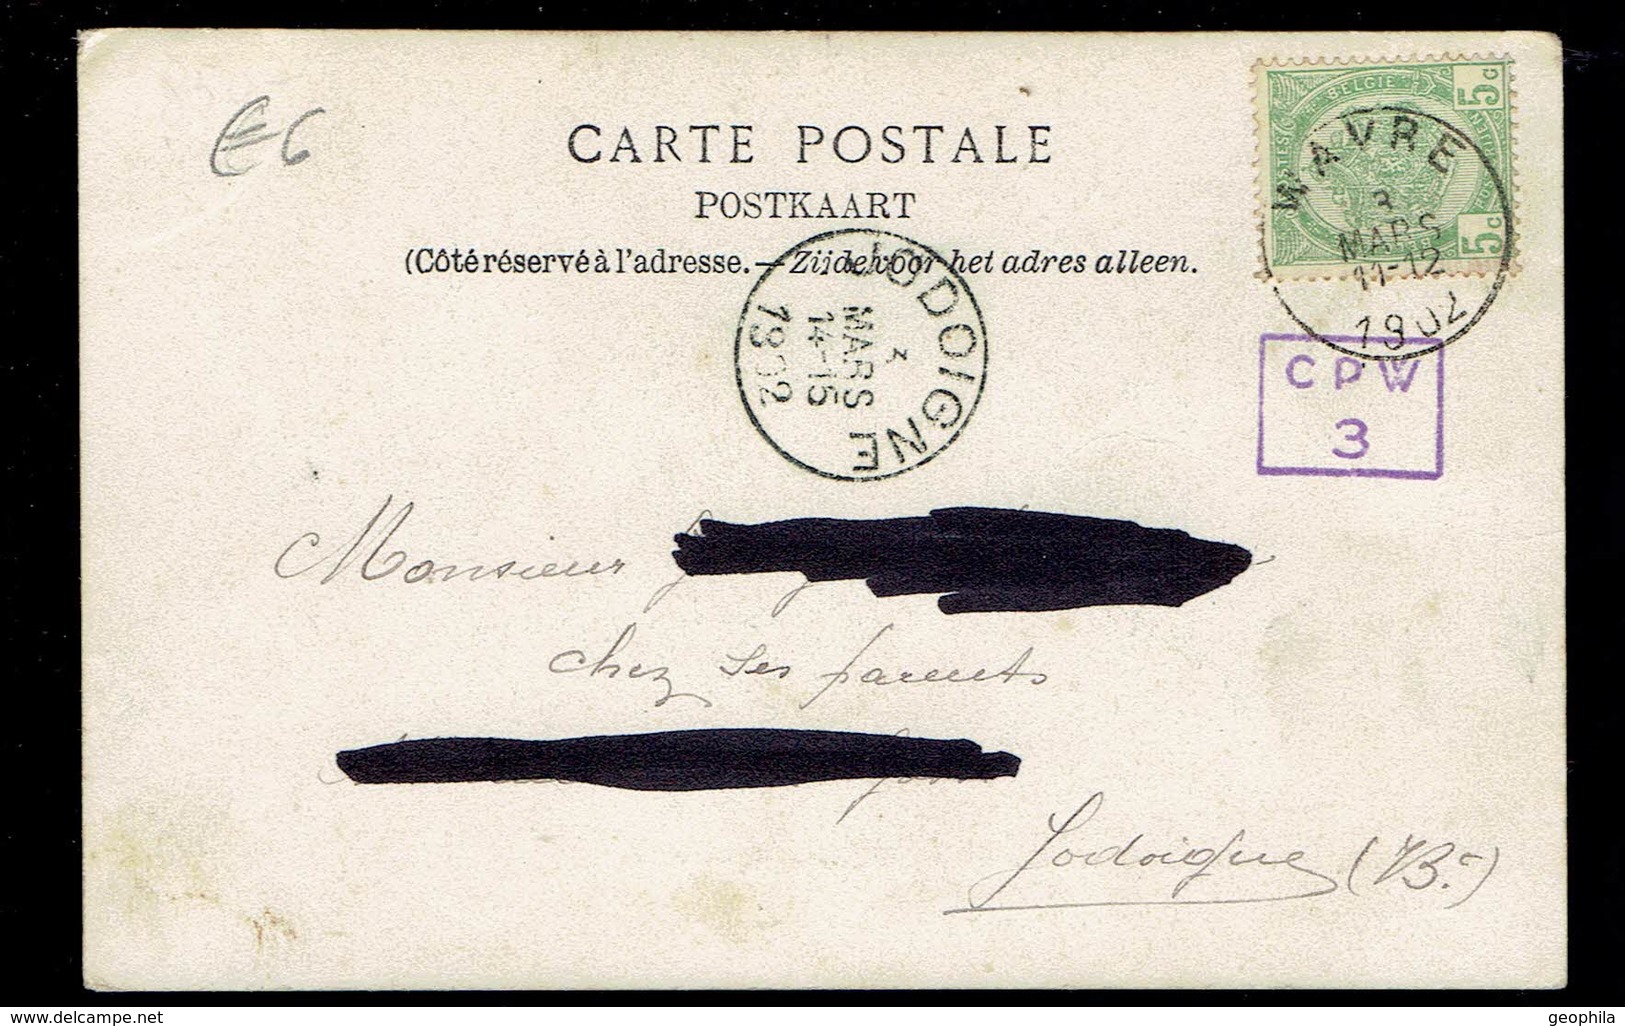 Wavre Visite De S.A.R. Le Prince Albert à L'Exposition Agricole Le 14 Juillet 1901 - Waver